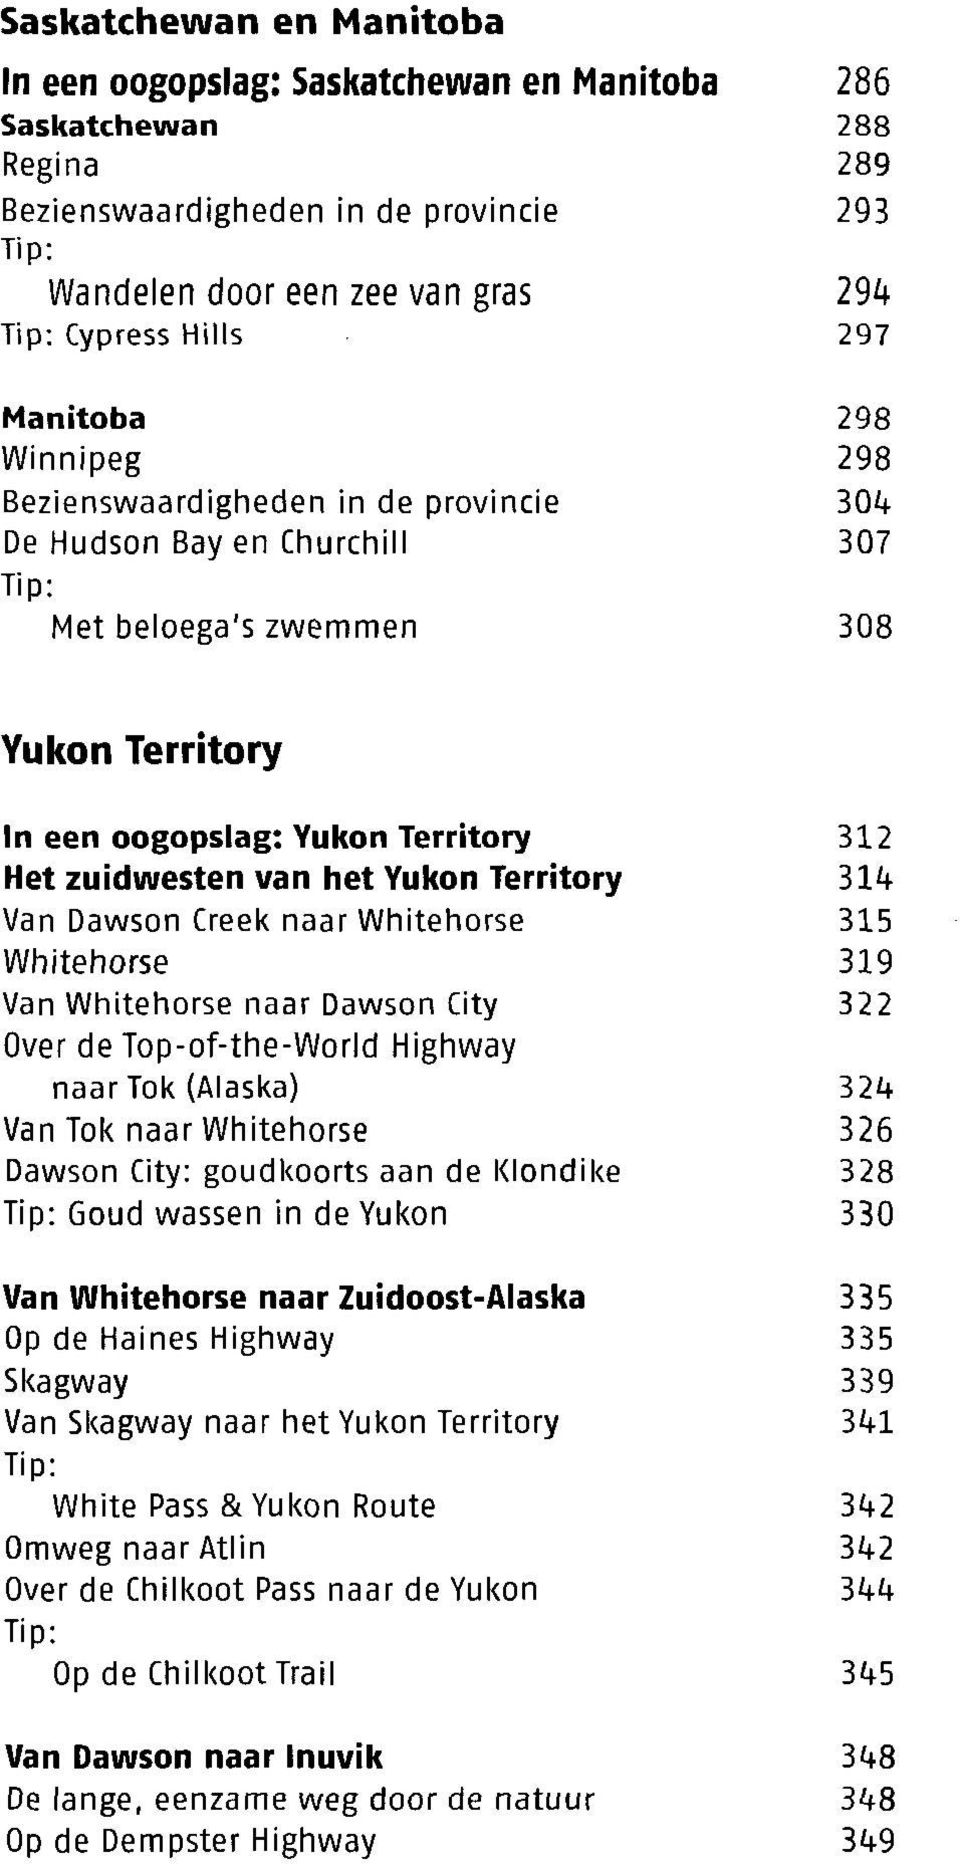 Yukon Territory 31<+ Van Dawson Creek naar Whitehorse 315 Whitehorse 319 Van Whitehorse naar Dawson City 322 Over de Top-of-the-World Highway naar Tok (Alaska) 32*+ Van Tok naar Whitehorse 326 Dawson